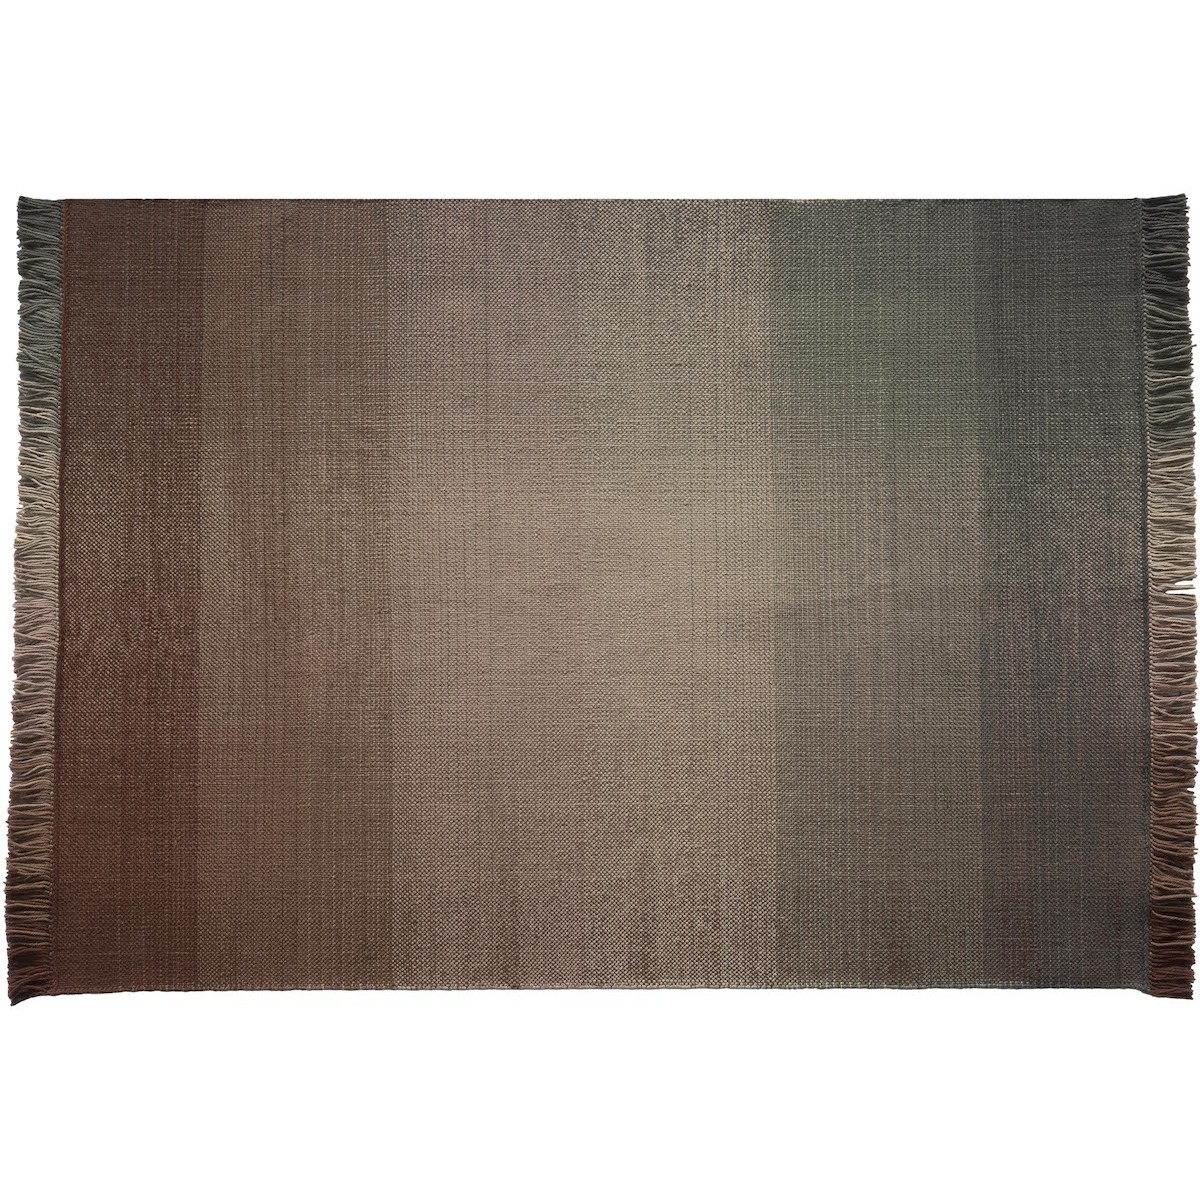 200x300cm - Palette 4 - tapis polyéthylène Shade